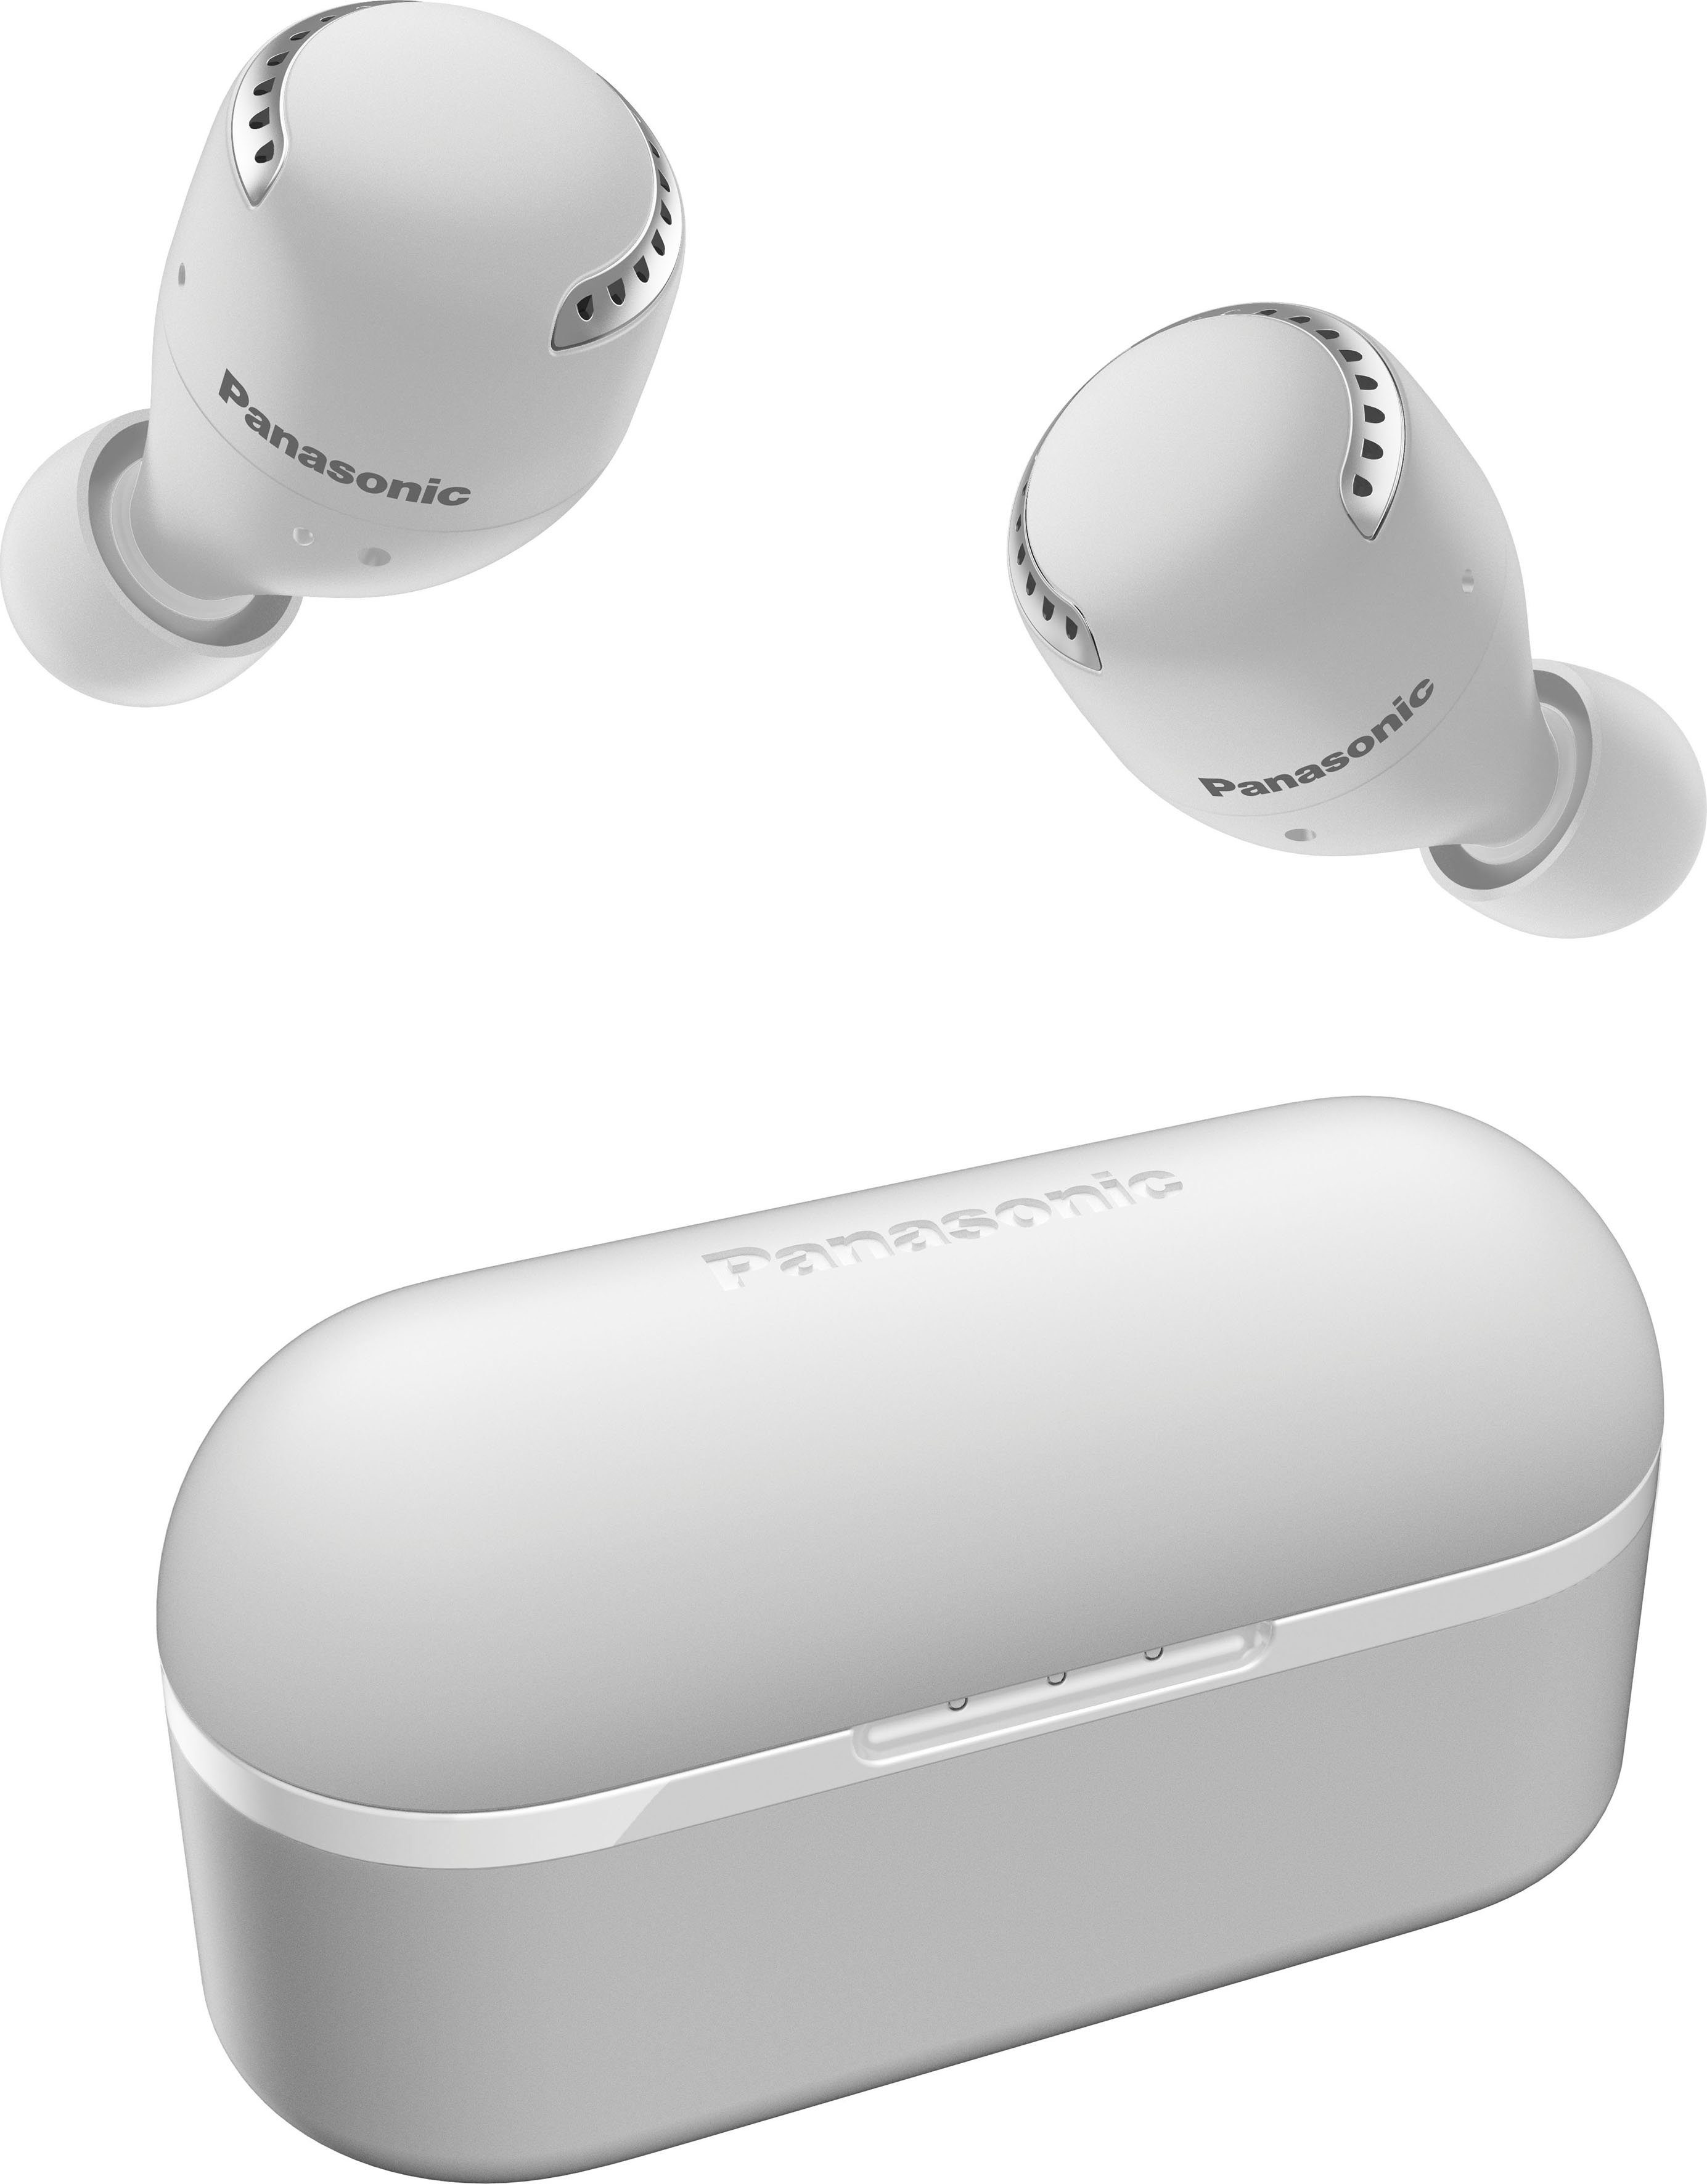 Panasonic True (Noise-Cancelling, Sprachsteuerung, RZ-S500WE weiß In-Ear-Kopfhörer Wireless, wireless Bluetooth)